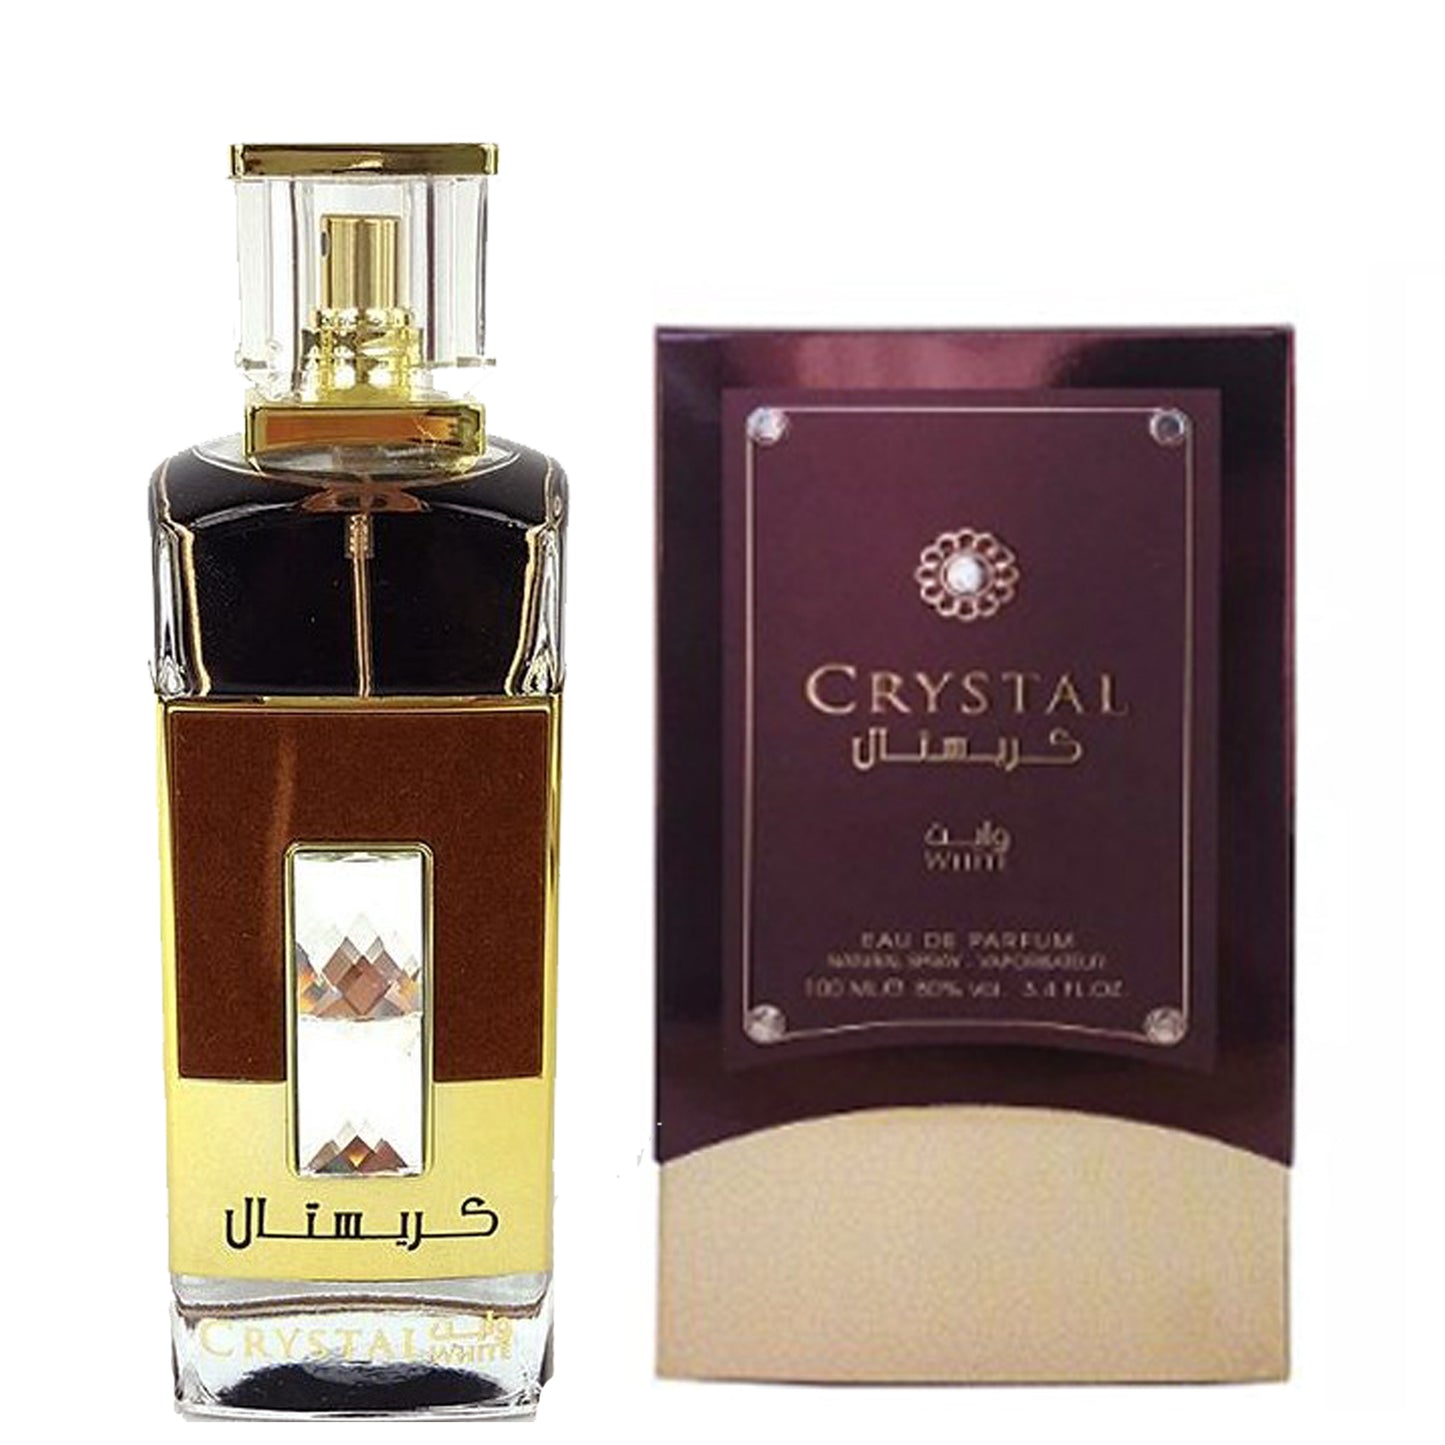 100 ml Woda Perfumowana Crystal White Drzewno- pudrowy zapach dla kobiet